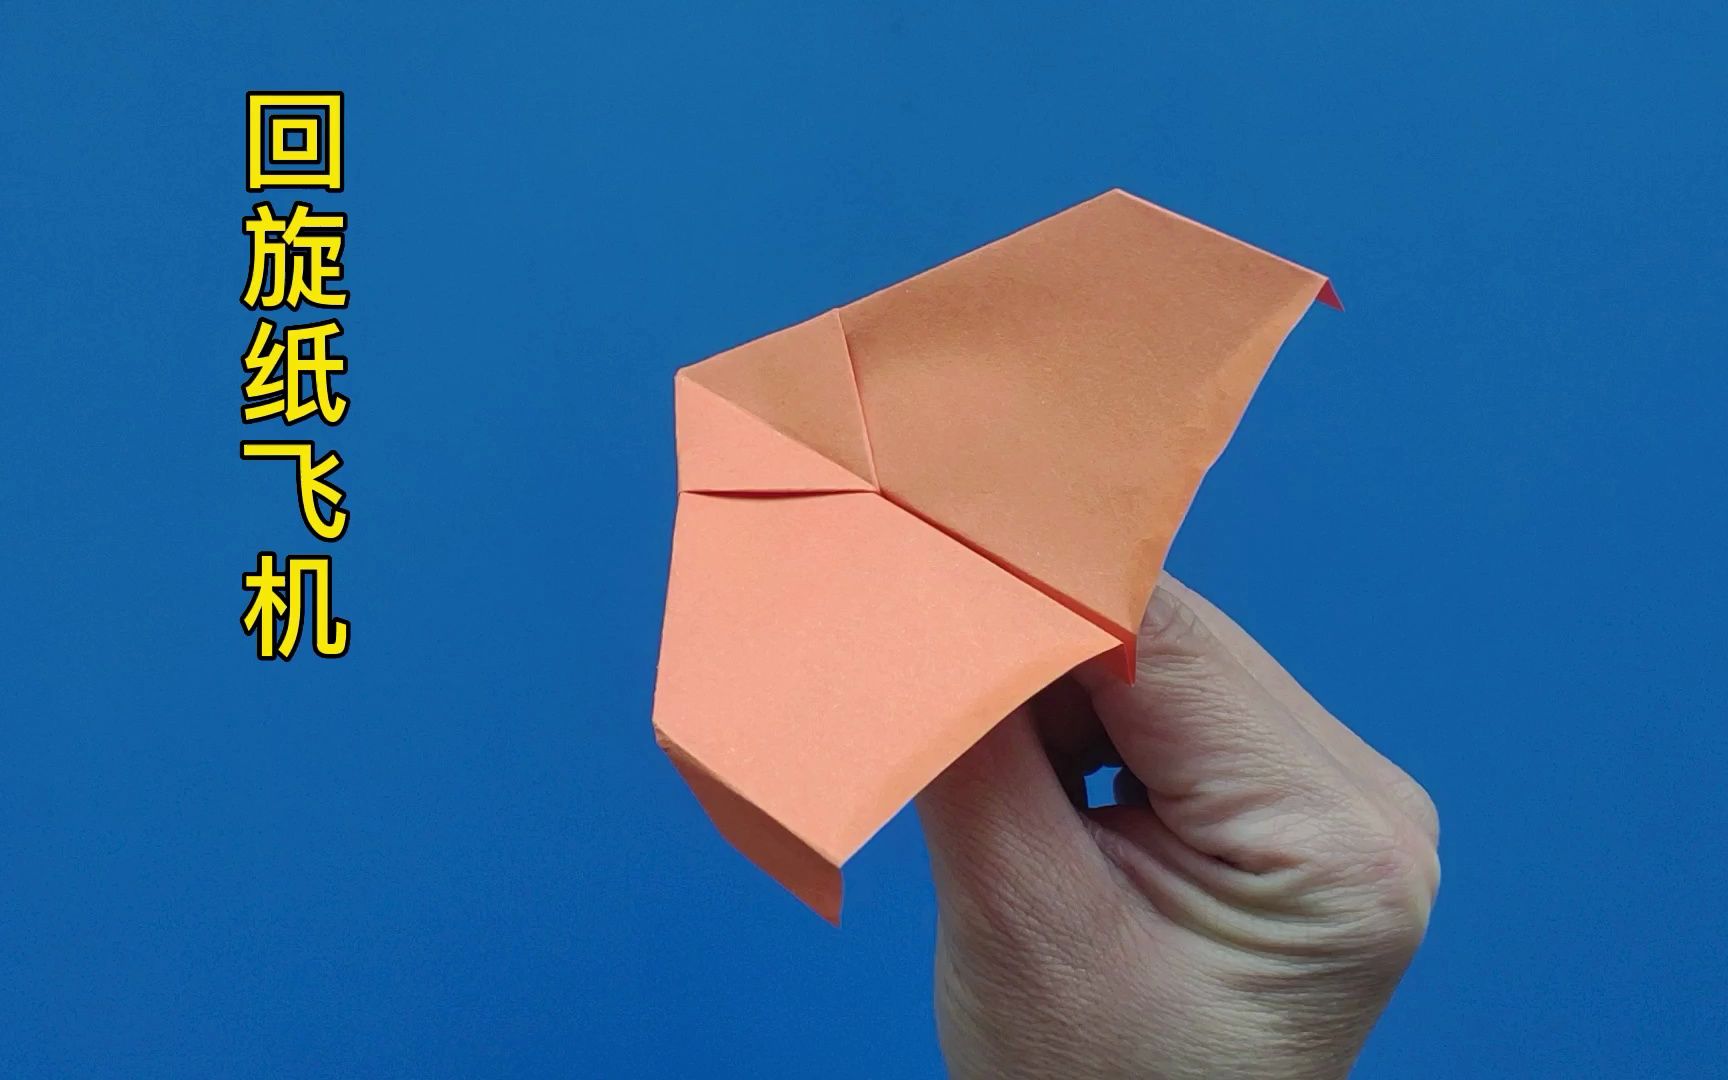 爱心回旋纸飞机怎么折图片